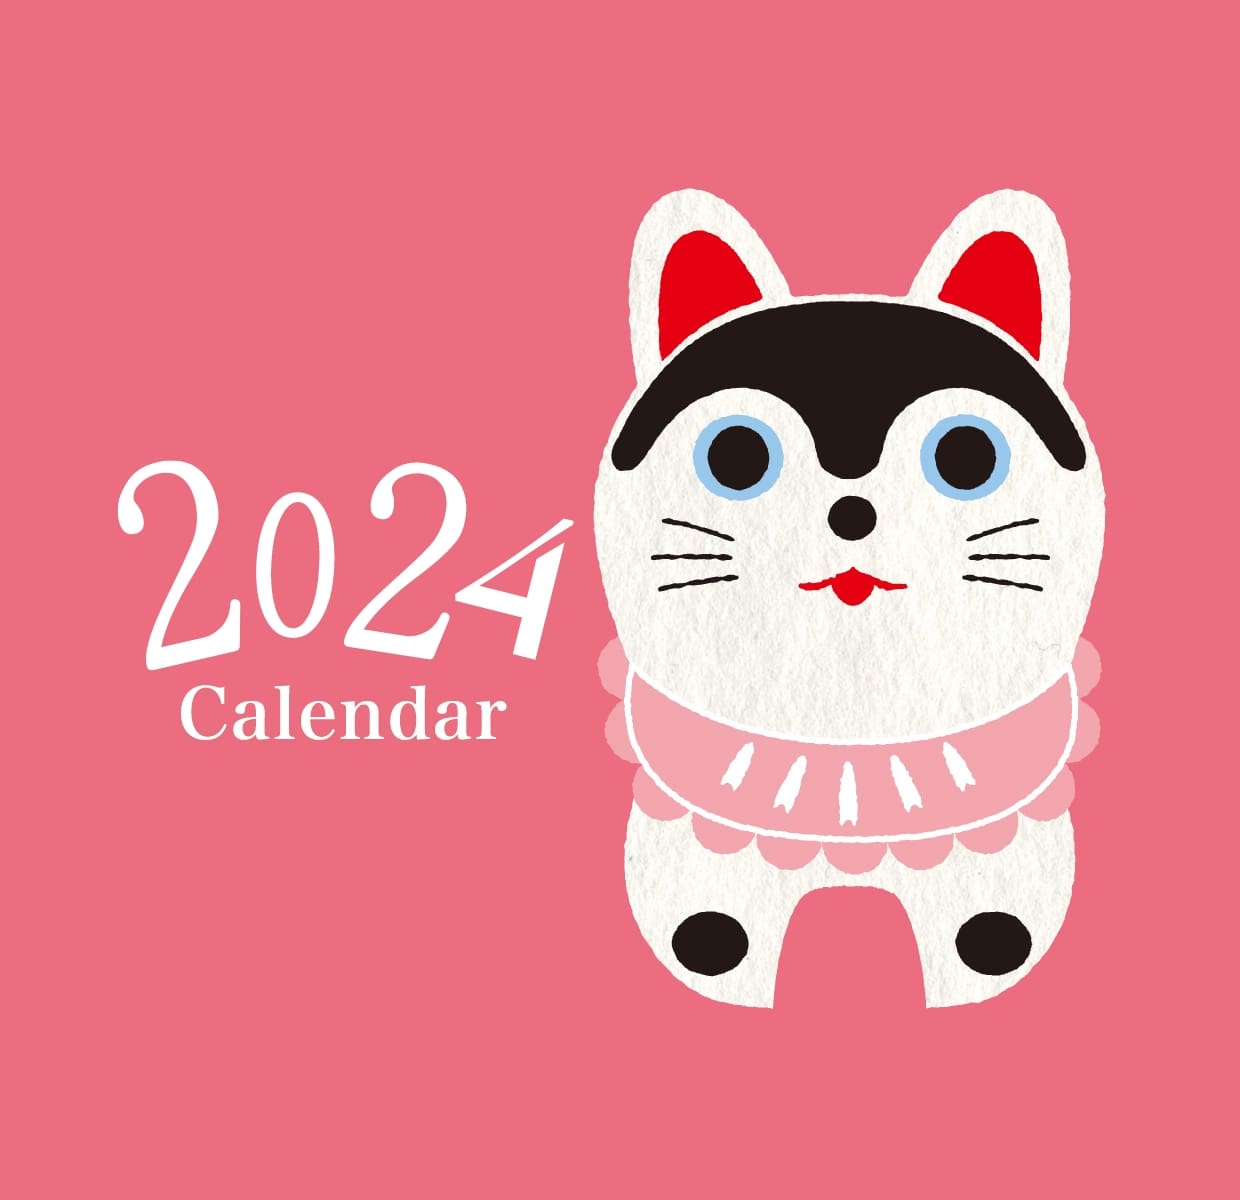 戌の日カレンダー